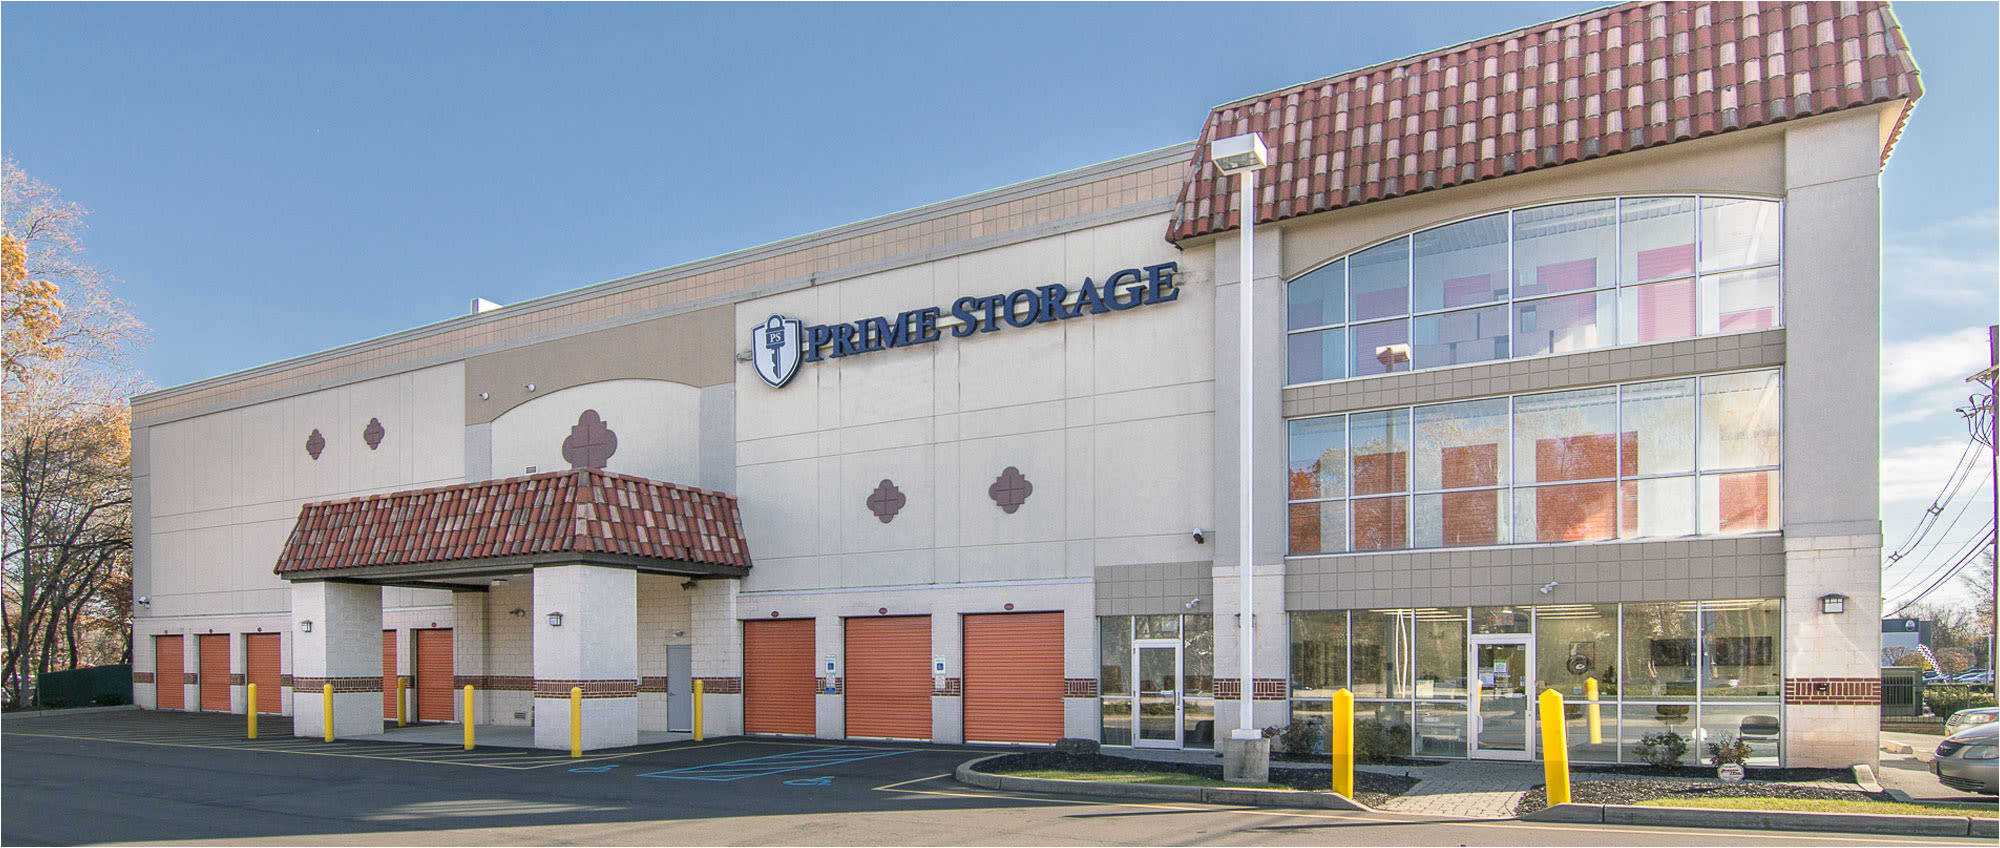 ny exterior of prime storage in saratoga springs